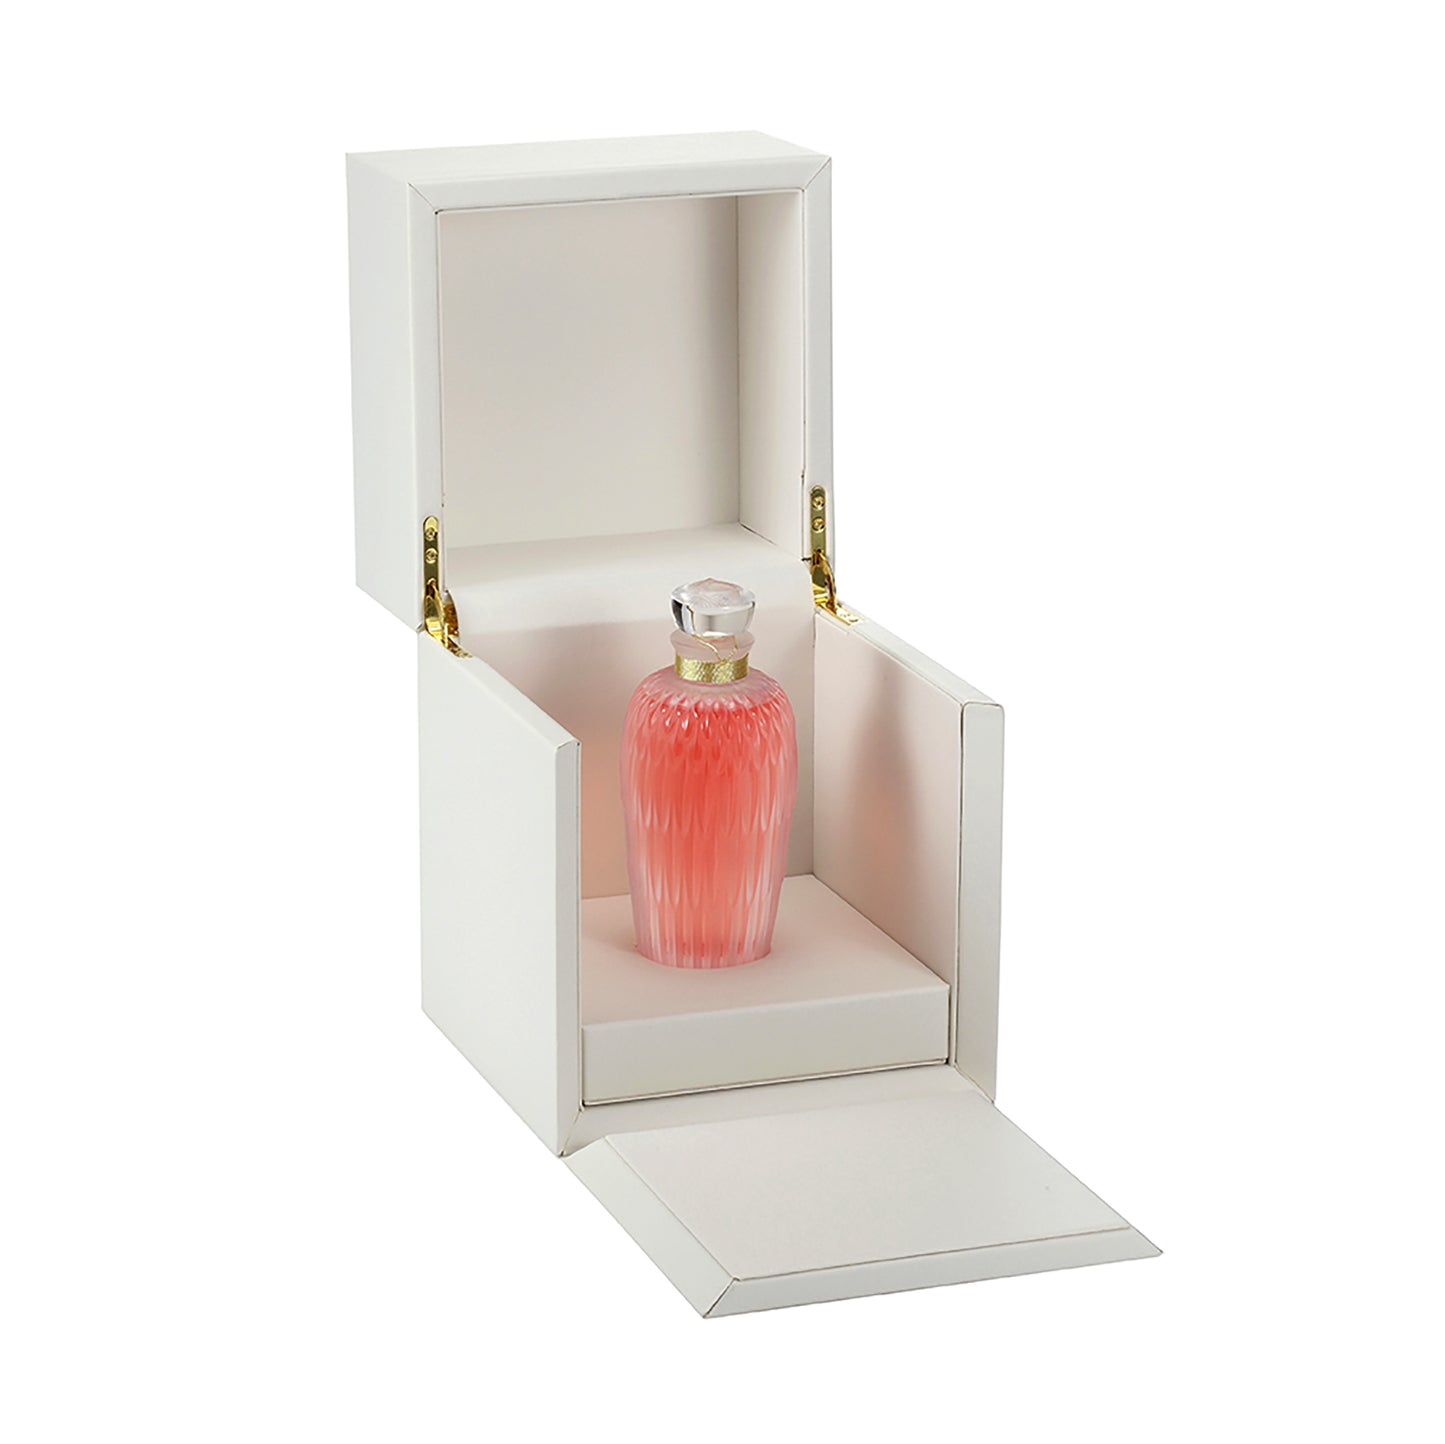 Lalique de Lalique 2.7 oz Limited Edition 2015 "Plumes" Crystal Extrait de Parfum